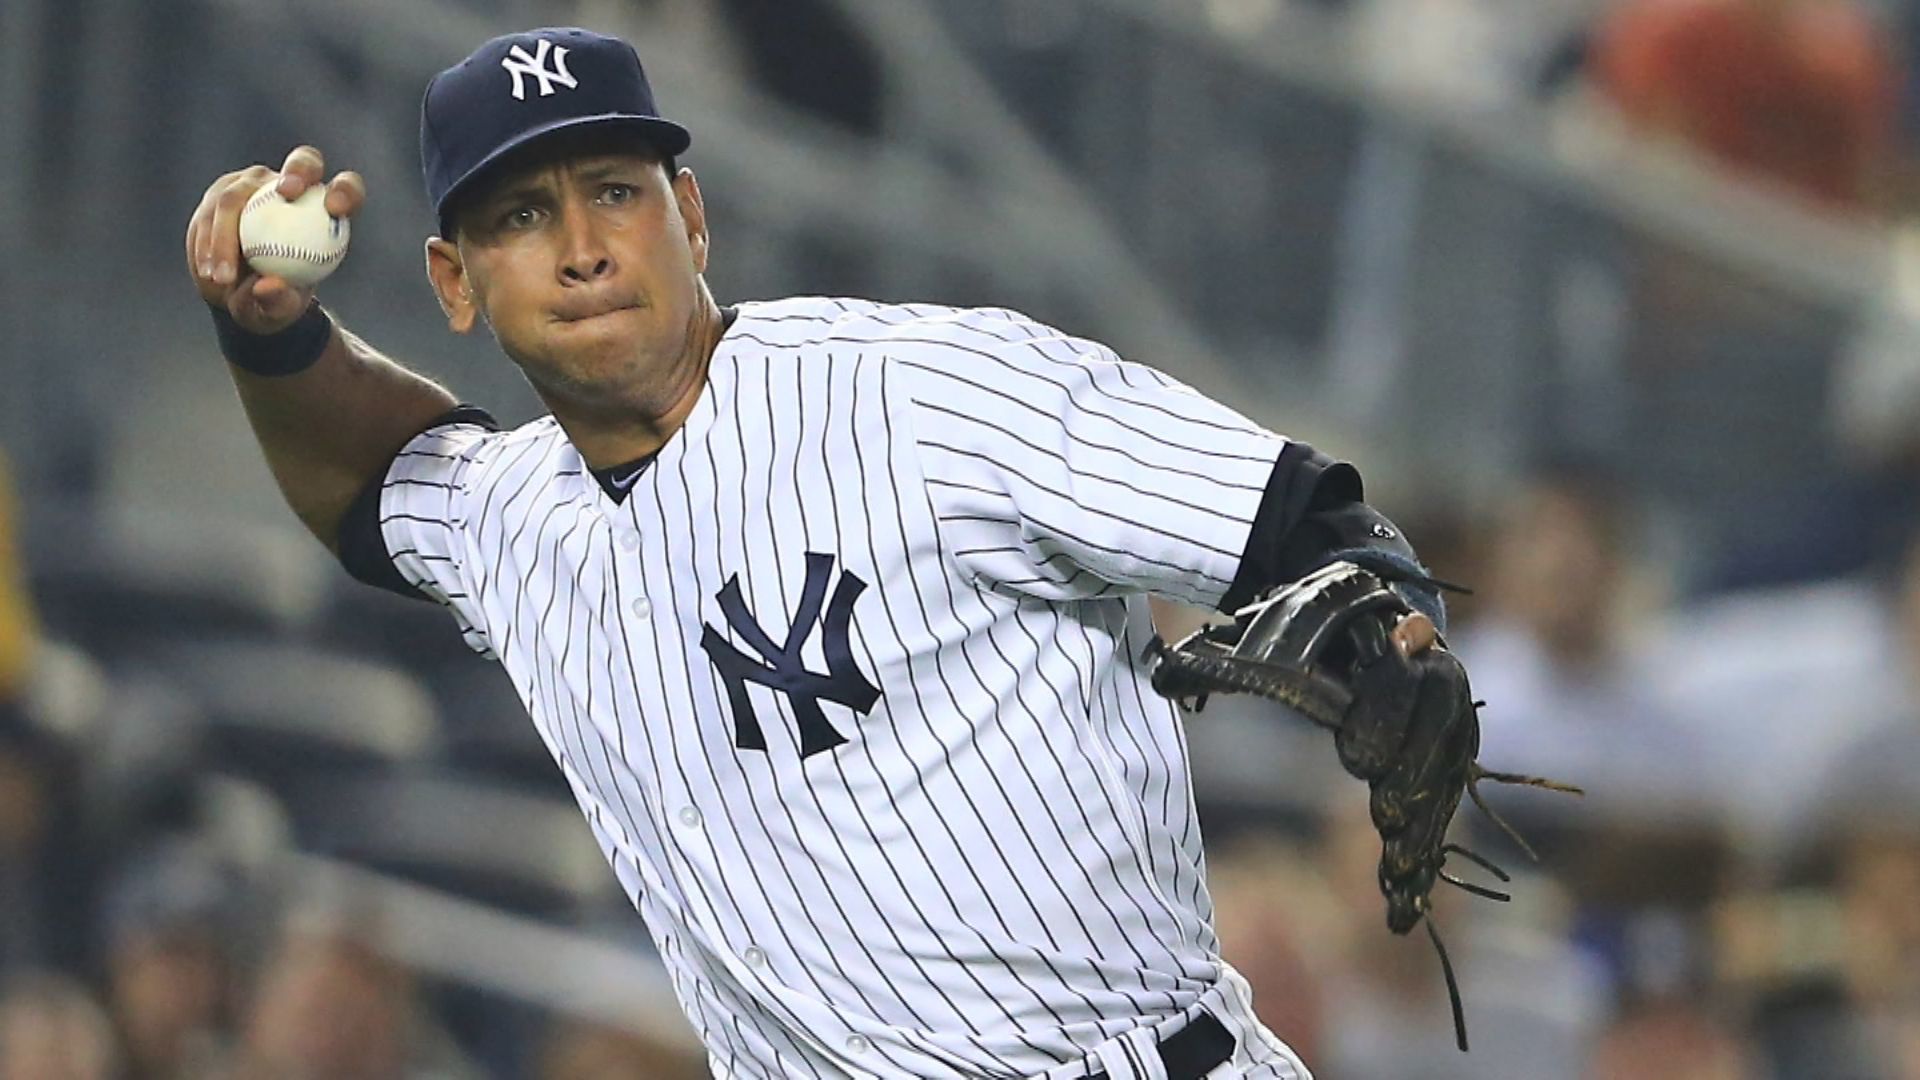 Report: Alex Rodriguez, MLB negotiating suspension deal